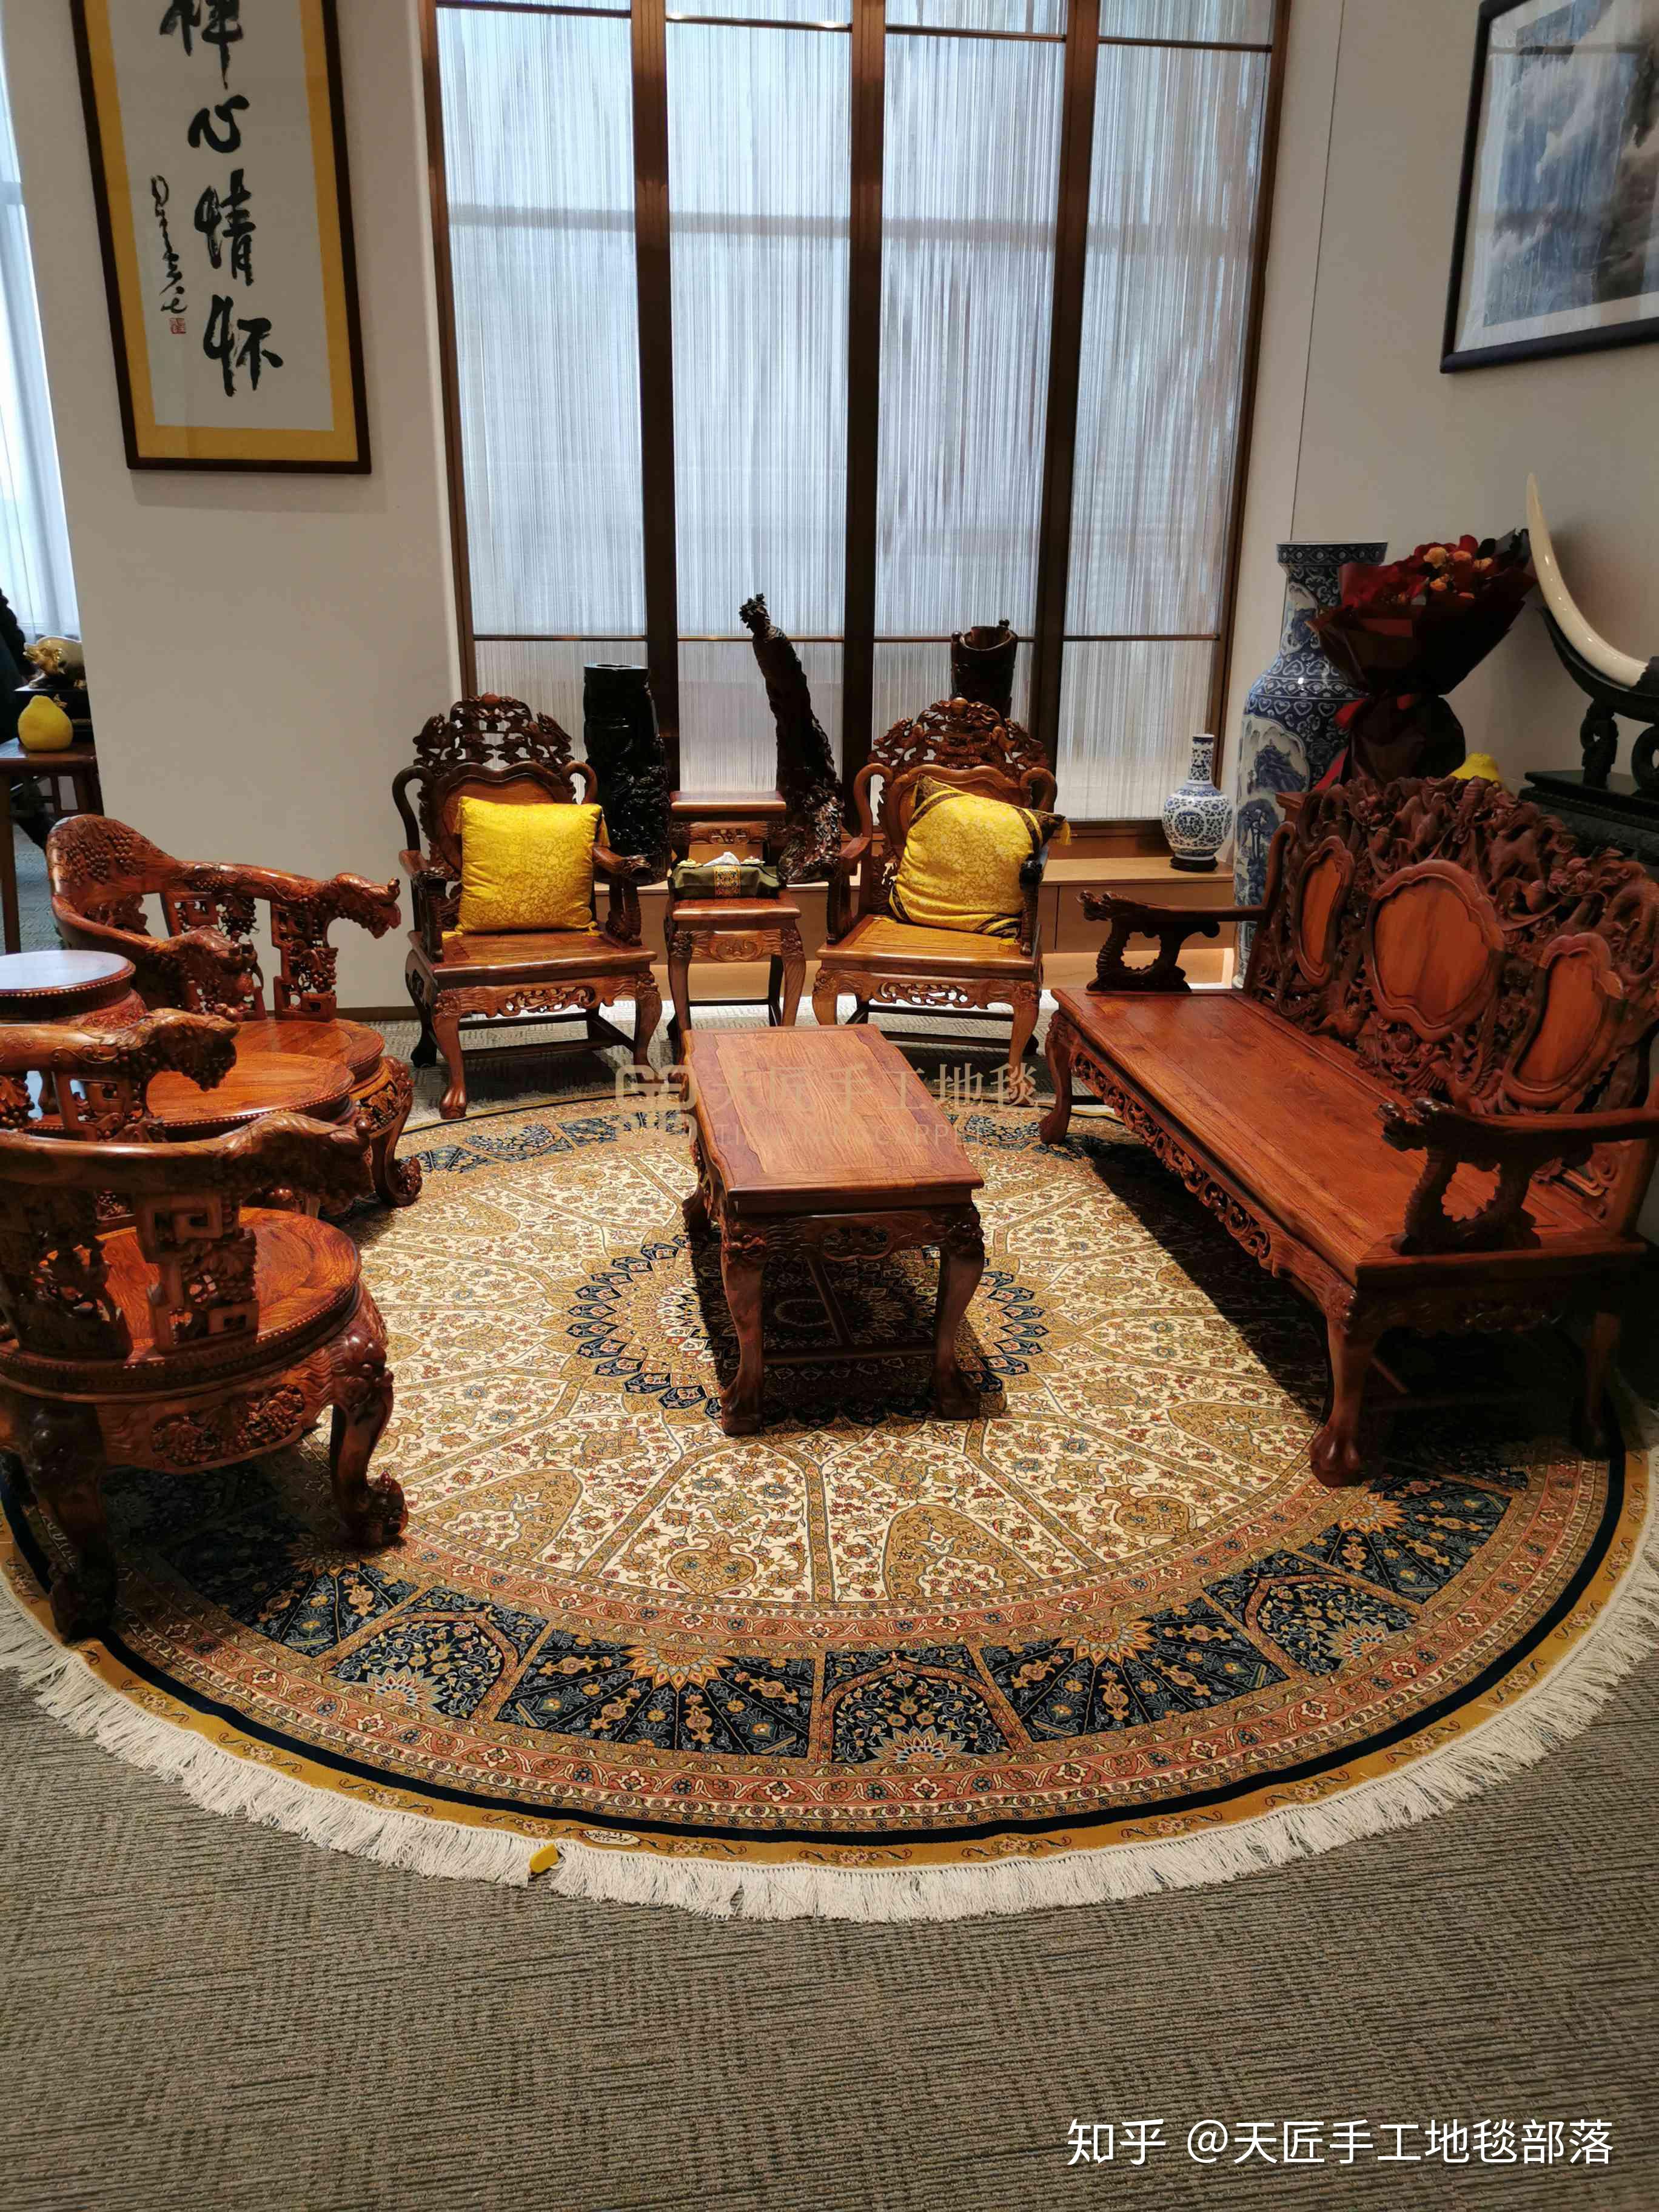 我家是红木家具的沙发和茶几客厅需要一块手工地毯有推荐吗